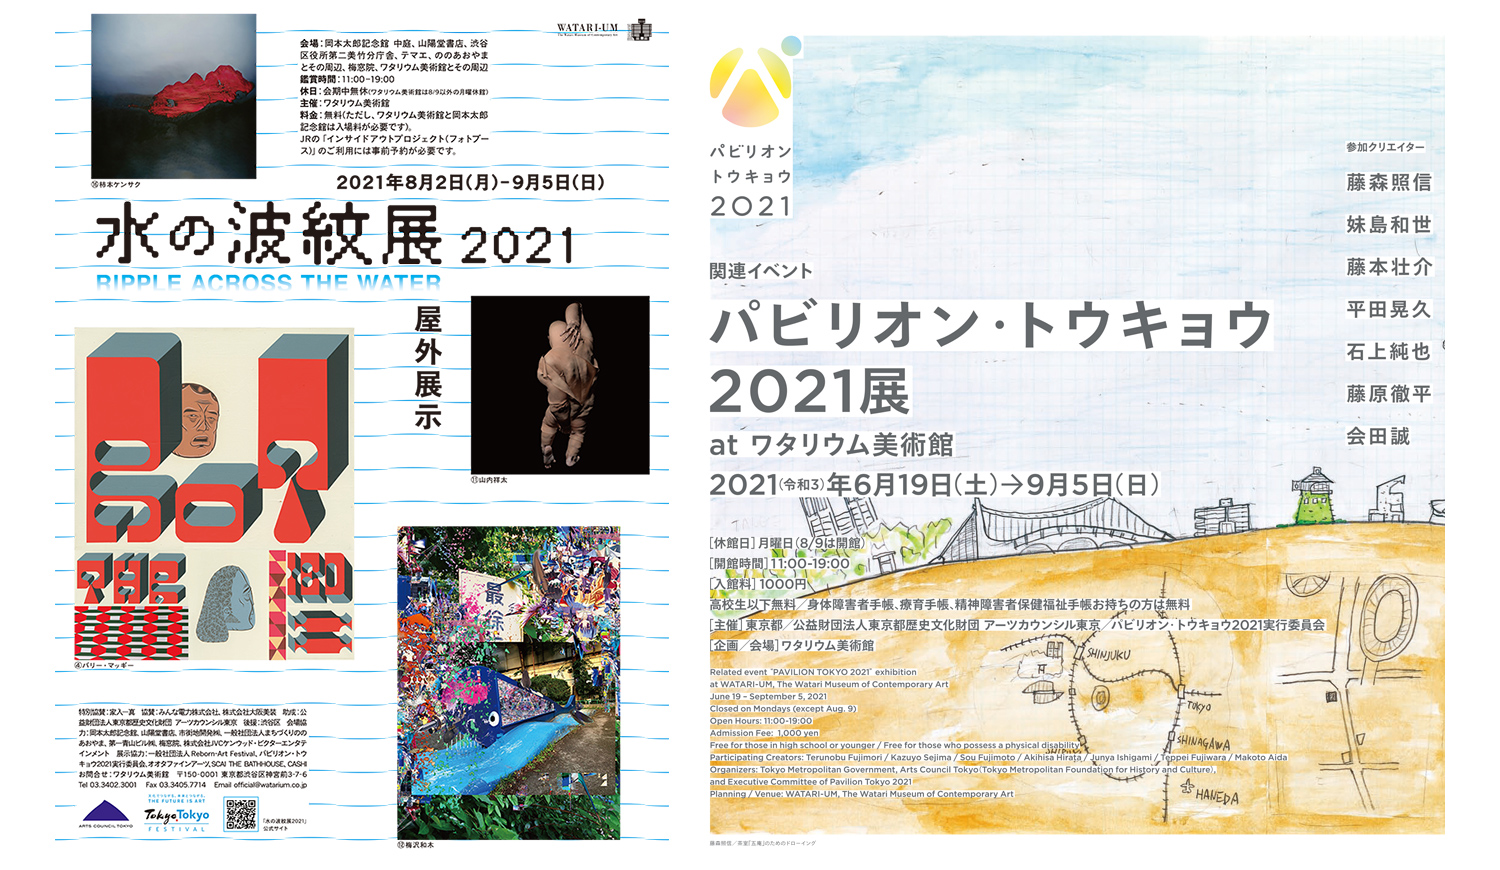 パビリオン・トウキョウ2021」&「水の波紋展2021」 at ワタリウム美術館